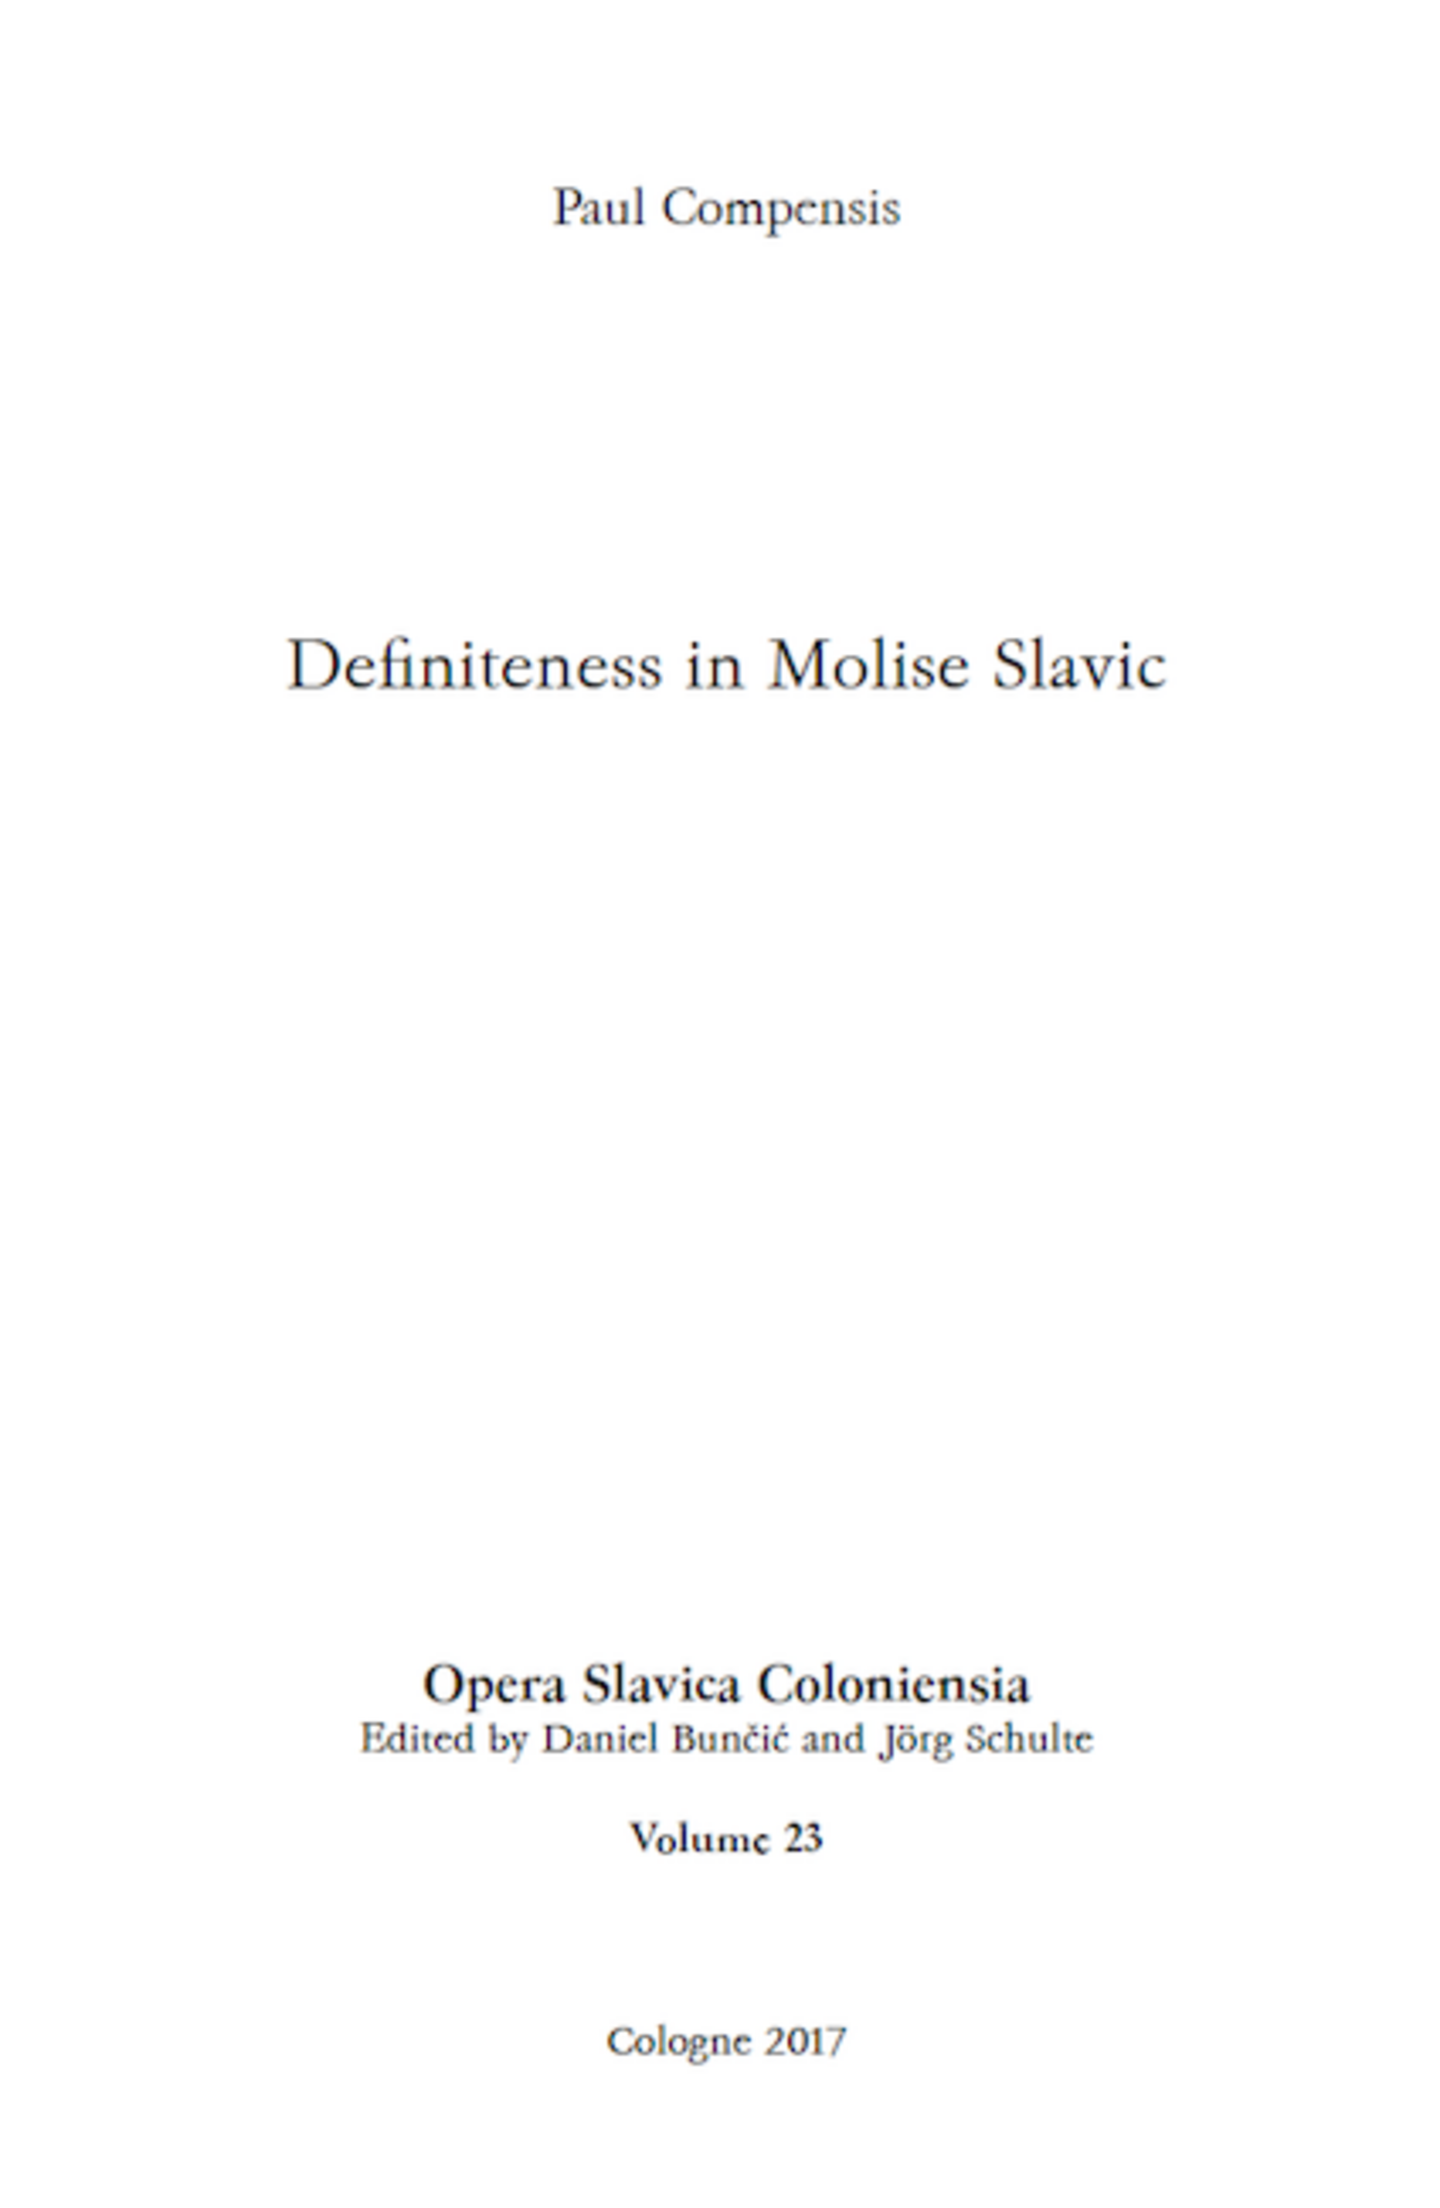 Opera Slavica Coloniensia, Bd. 23: Paul Compensis (2017) Definiteness in Molise Slavic